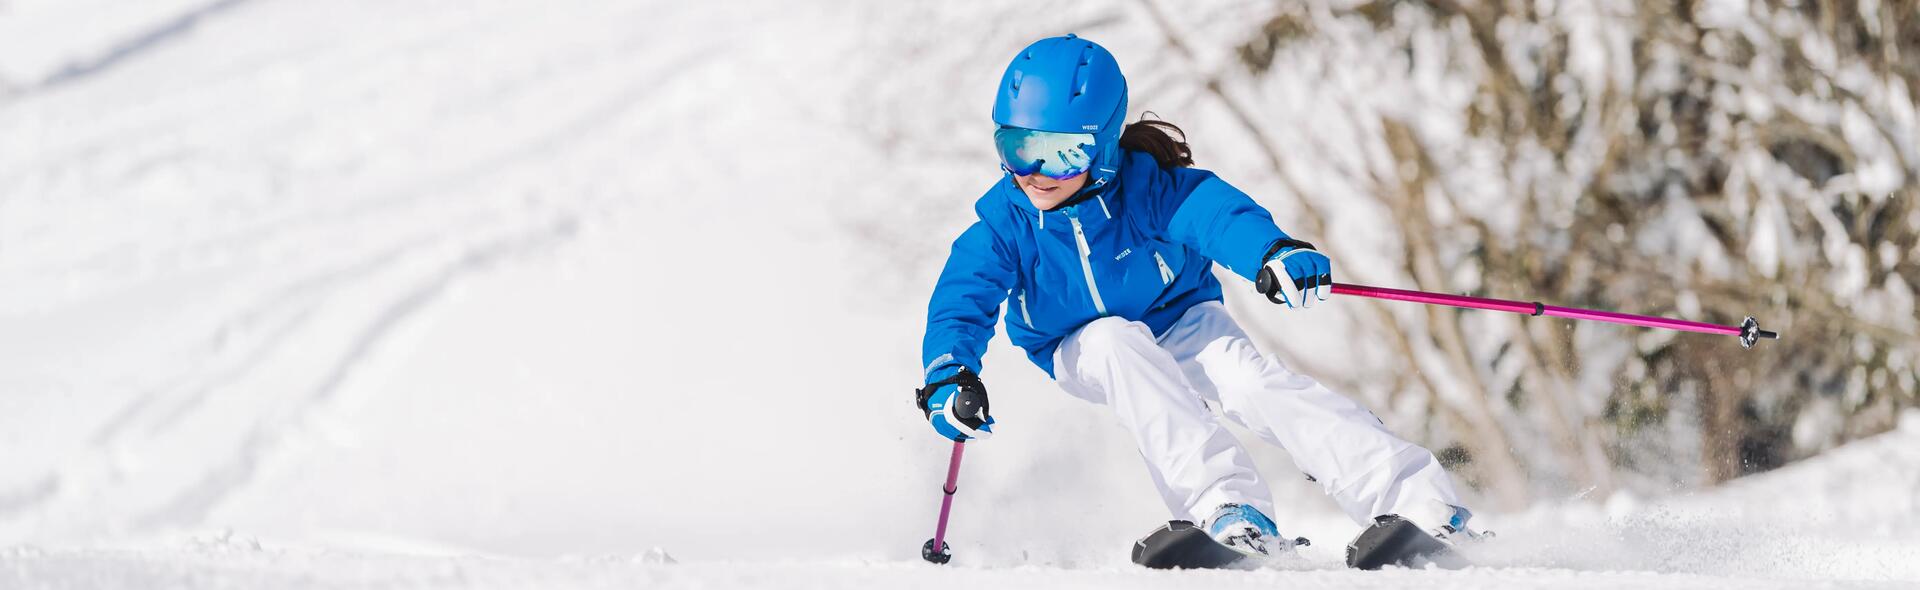 comment choisir des skis enfant